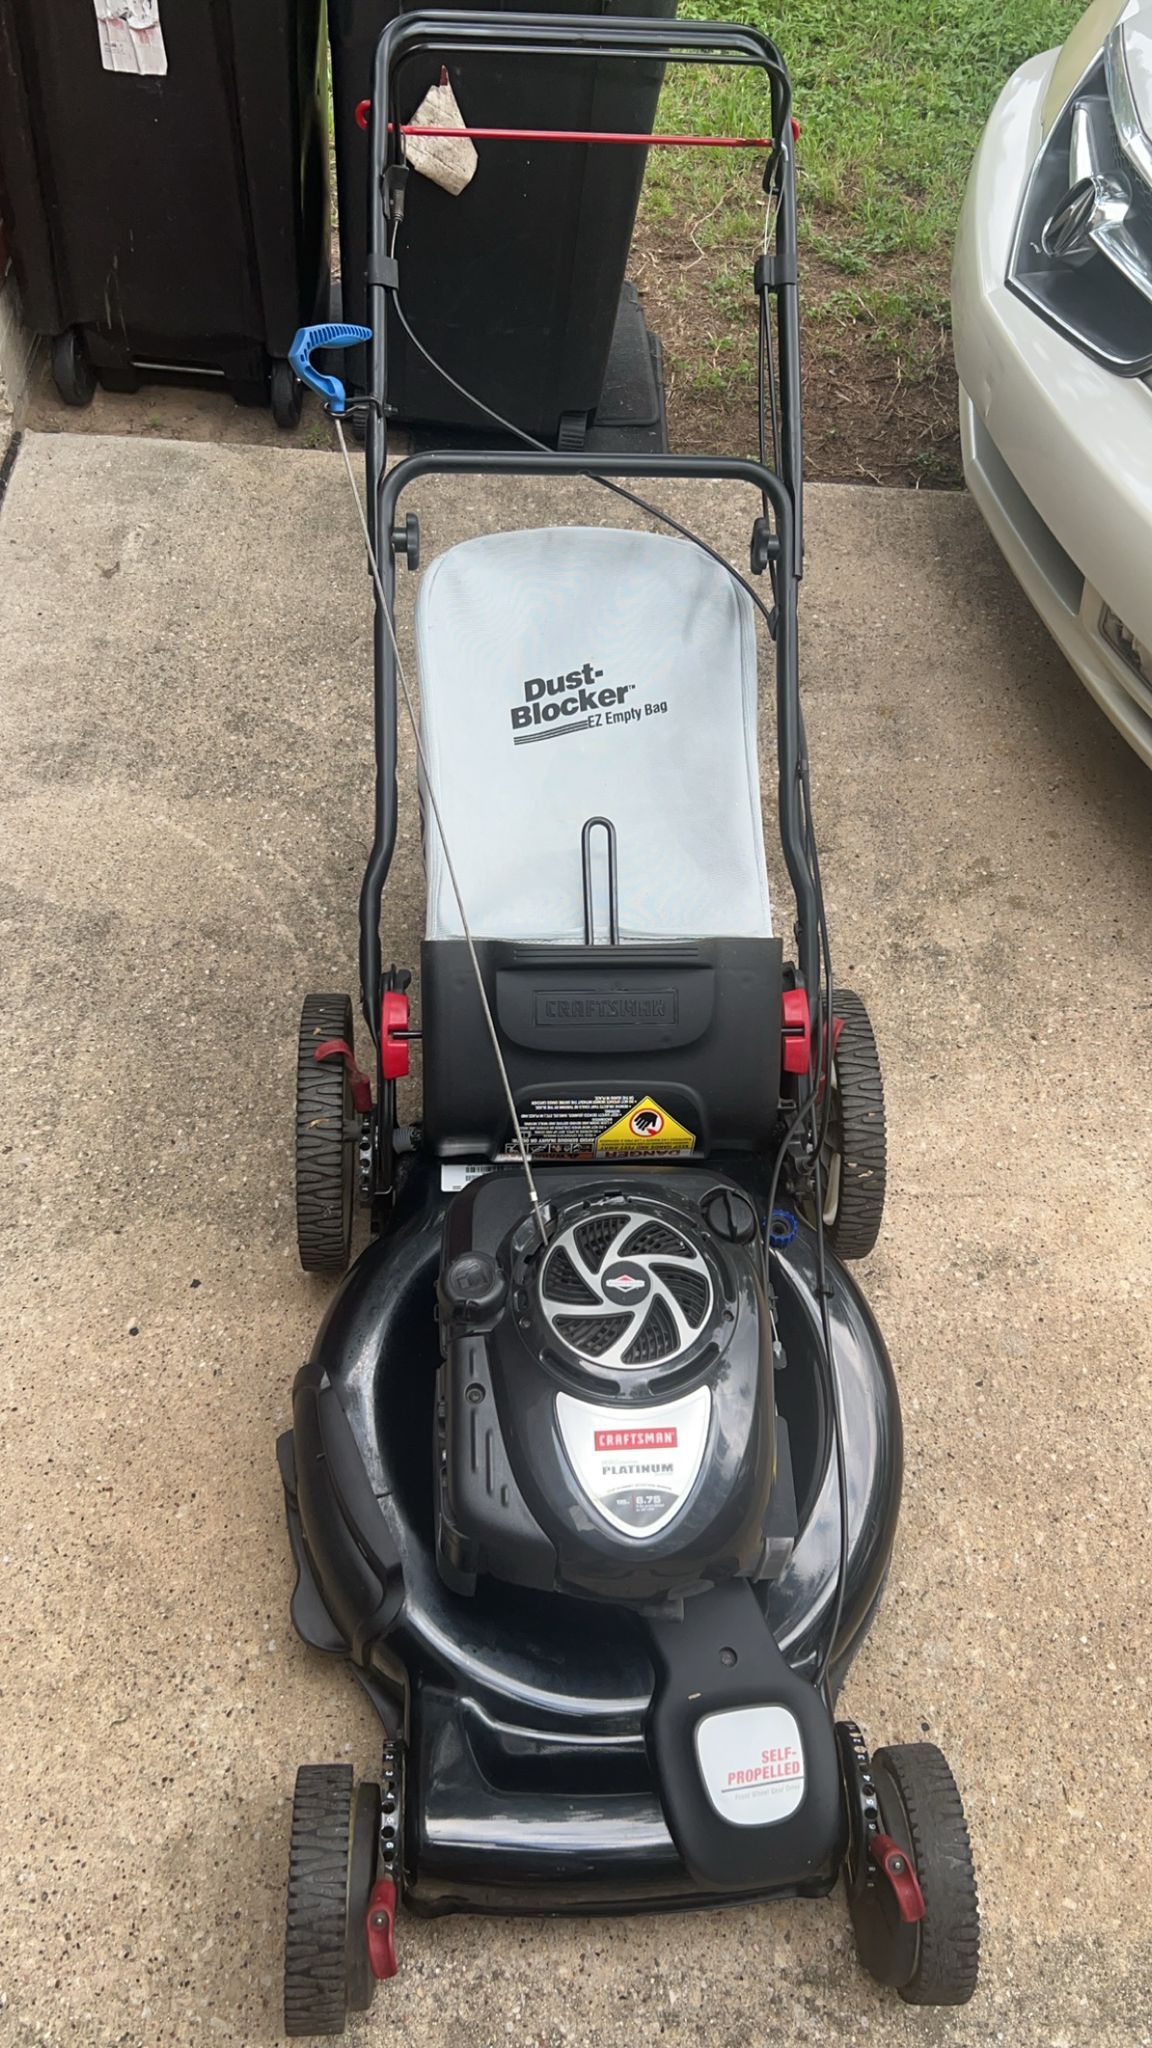 Self-Propelled Lawn Mower ($360)